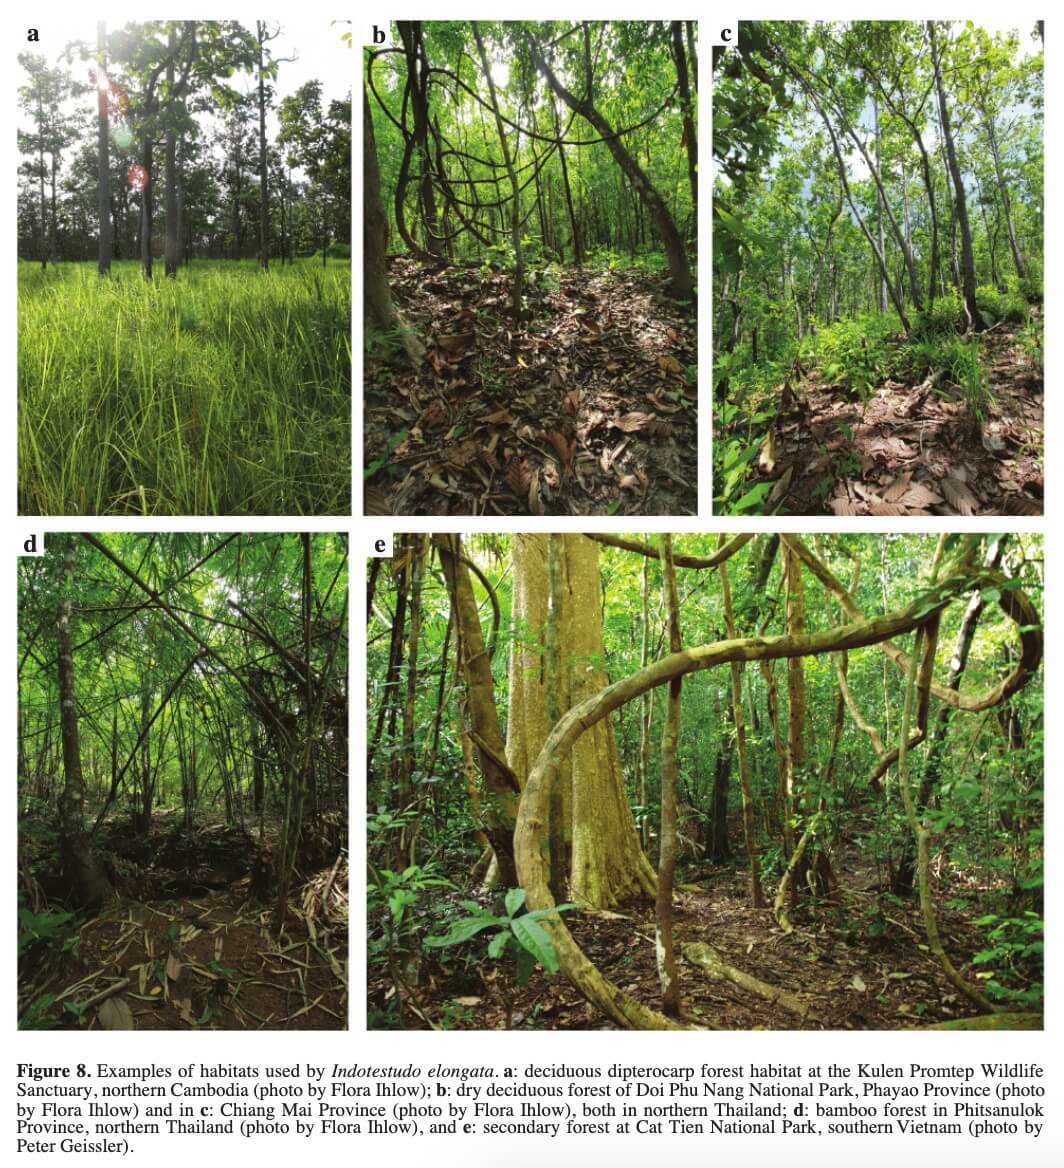 Ví dụ về tập tính của Rùa Núi vàng. a: Sinh cảnh rừng khộp rụng lá tại Khu bảo tồn động vật hoang dã Kulen Promtep, miền bắc Campuchia (ảnh của Flora Ihlow); b: Rừng khô rụng lá ở Vườn quốc gia Doi Phu Nang, tỉnh Phayao (ảnh của Flora Ihlow) và ở c: Tỉnh Chiang Mai (ảnh của Flora Ihlow), cả hai đều ở miền bắc Thái Lan; d: Rừng tre ở tỉnh Phitsanulok, miền bắc Thái Lan (ảnh của Flora Ihlow), và e: Rừng thứ sinh tại Vườn quốc gia Cát Tiên, miền nam Việt Nam (ảnh của Peter Geissler)